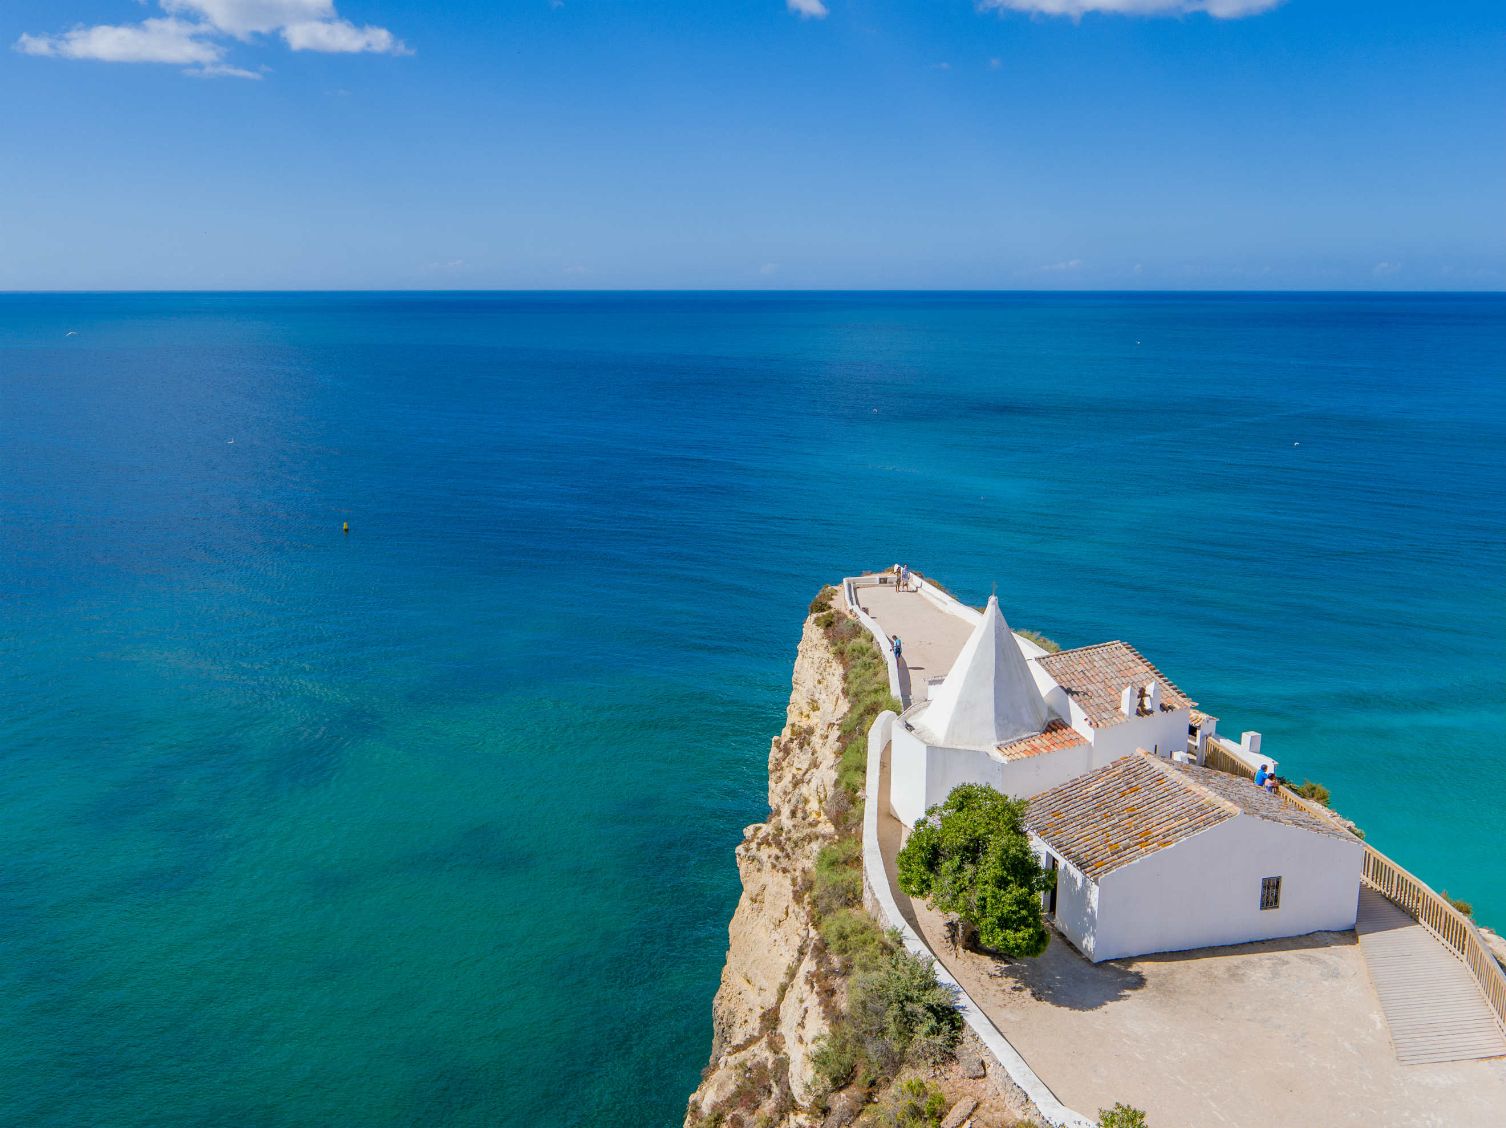 Algarve promove oferta turística diferenciada no mercado espanhol